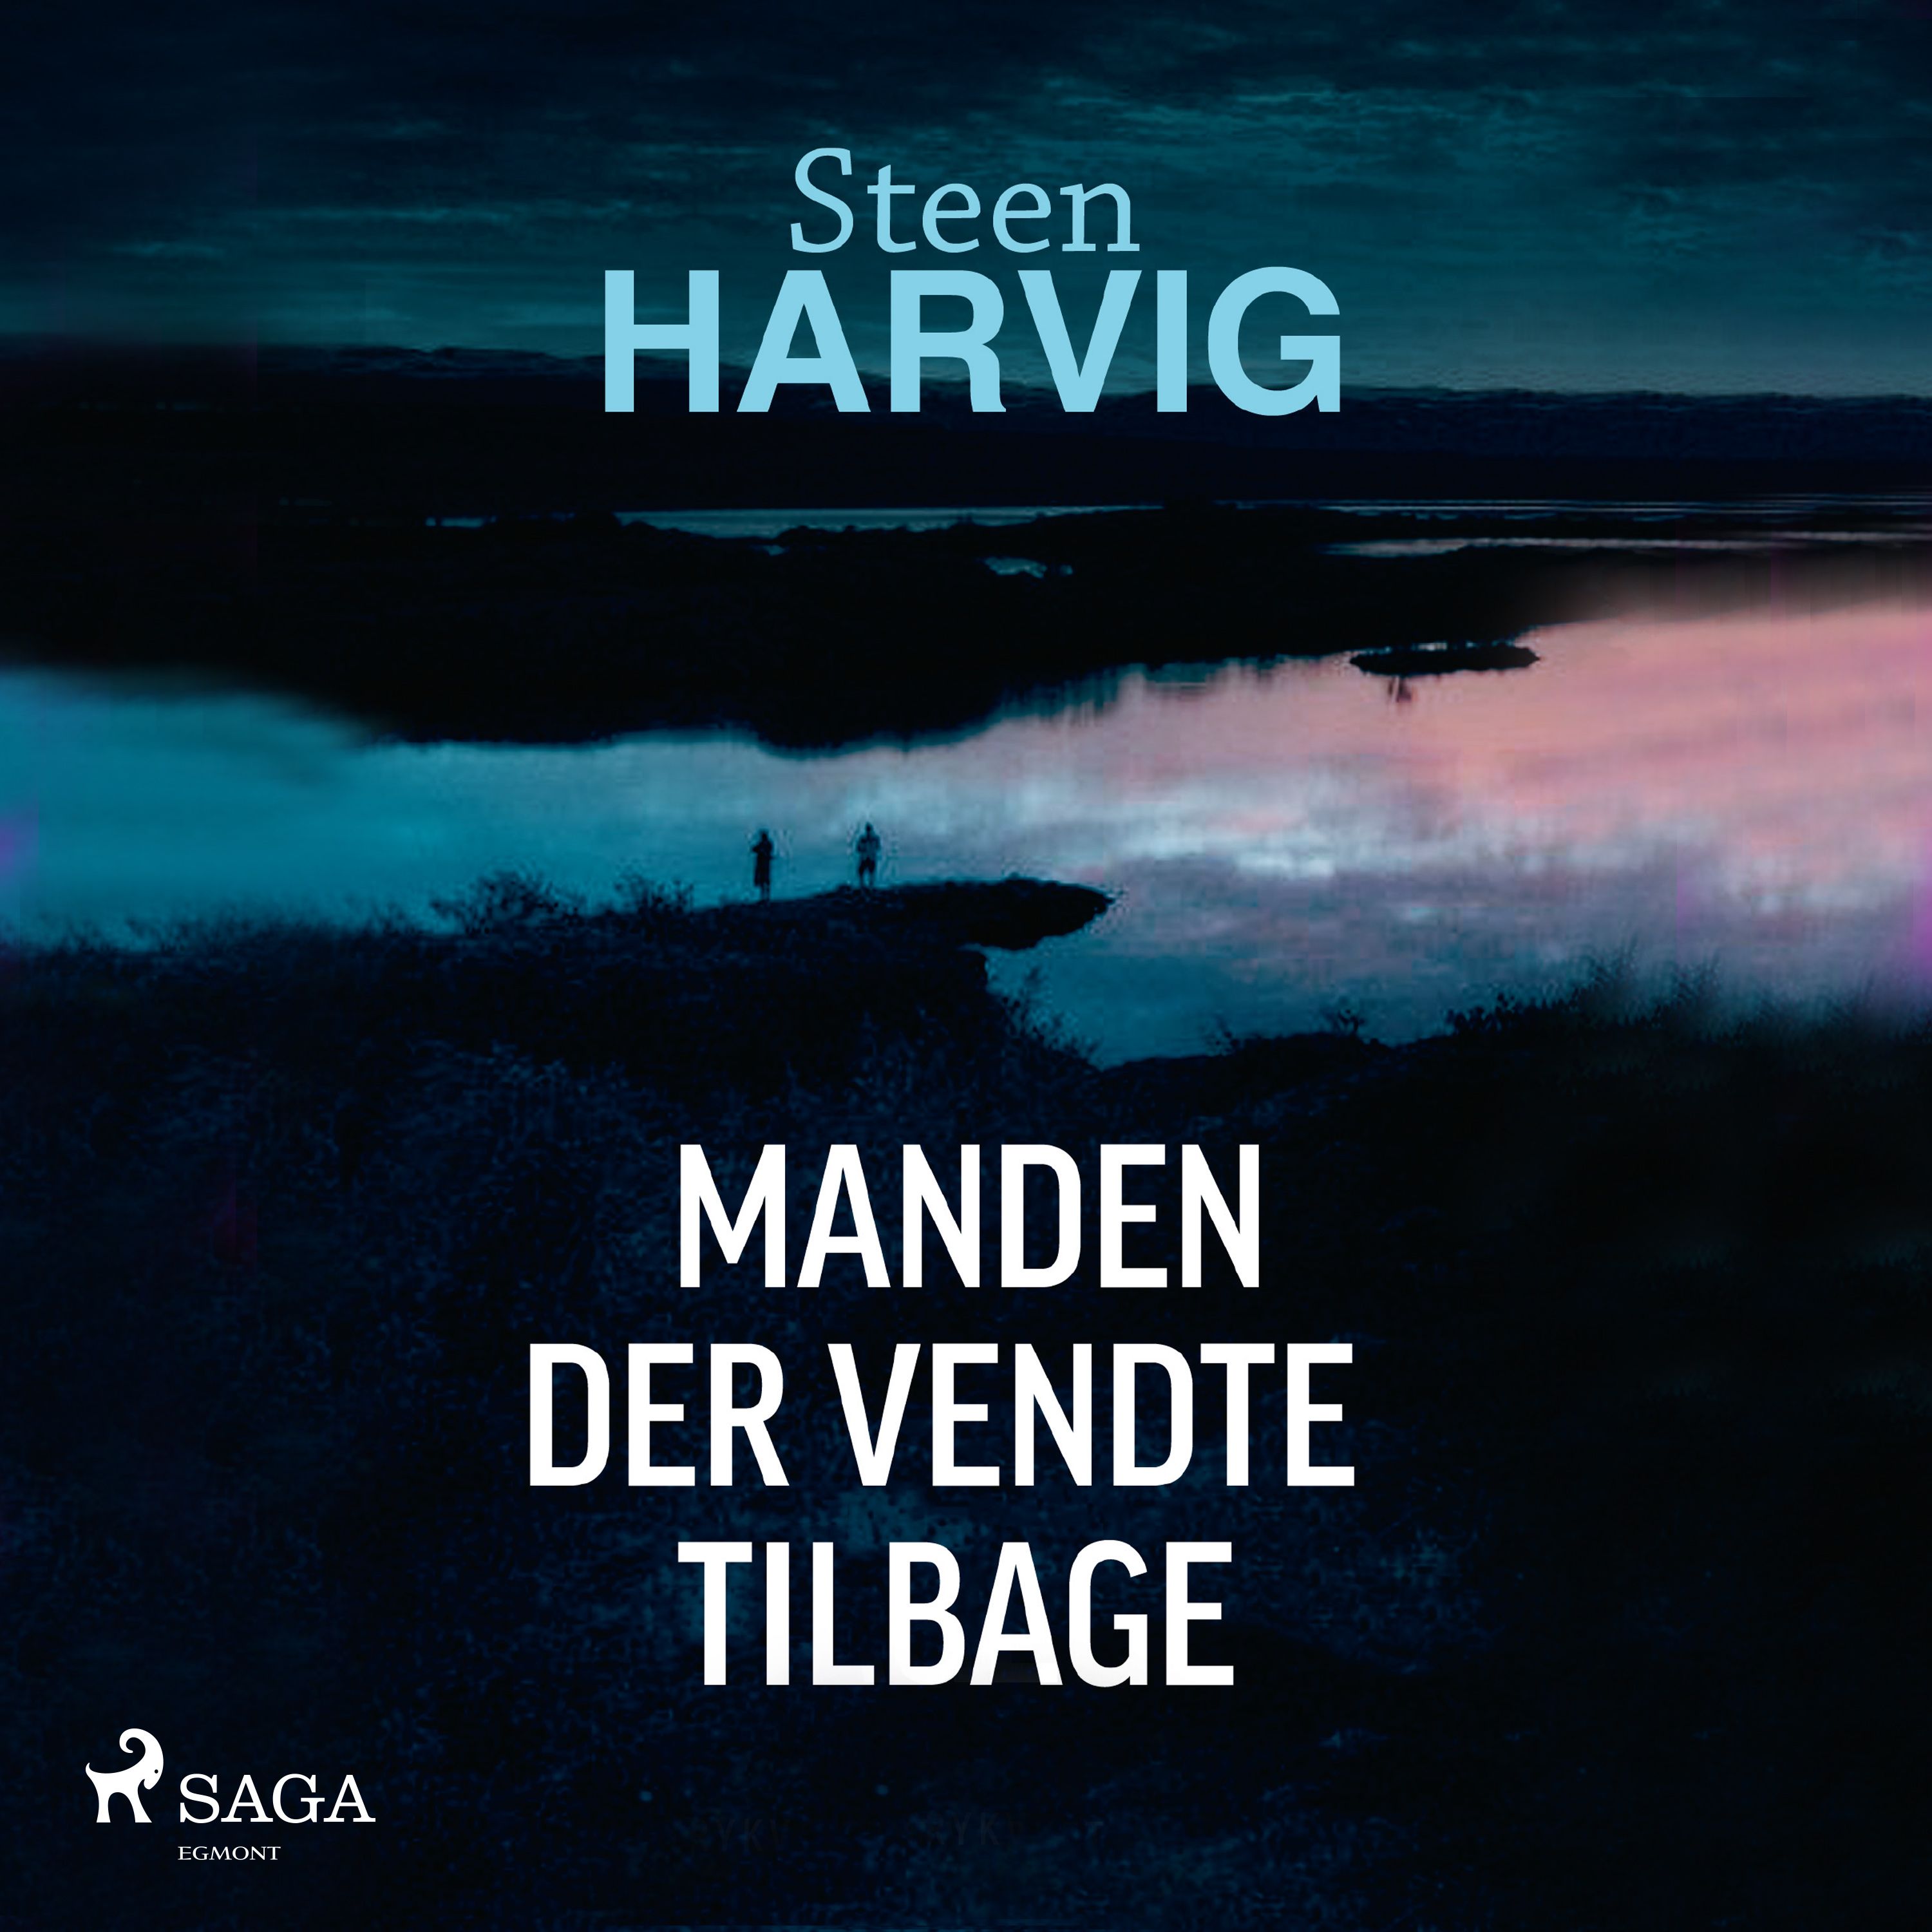 Manden der vendte tilbage, ljudbok av Steen Harvig